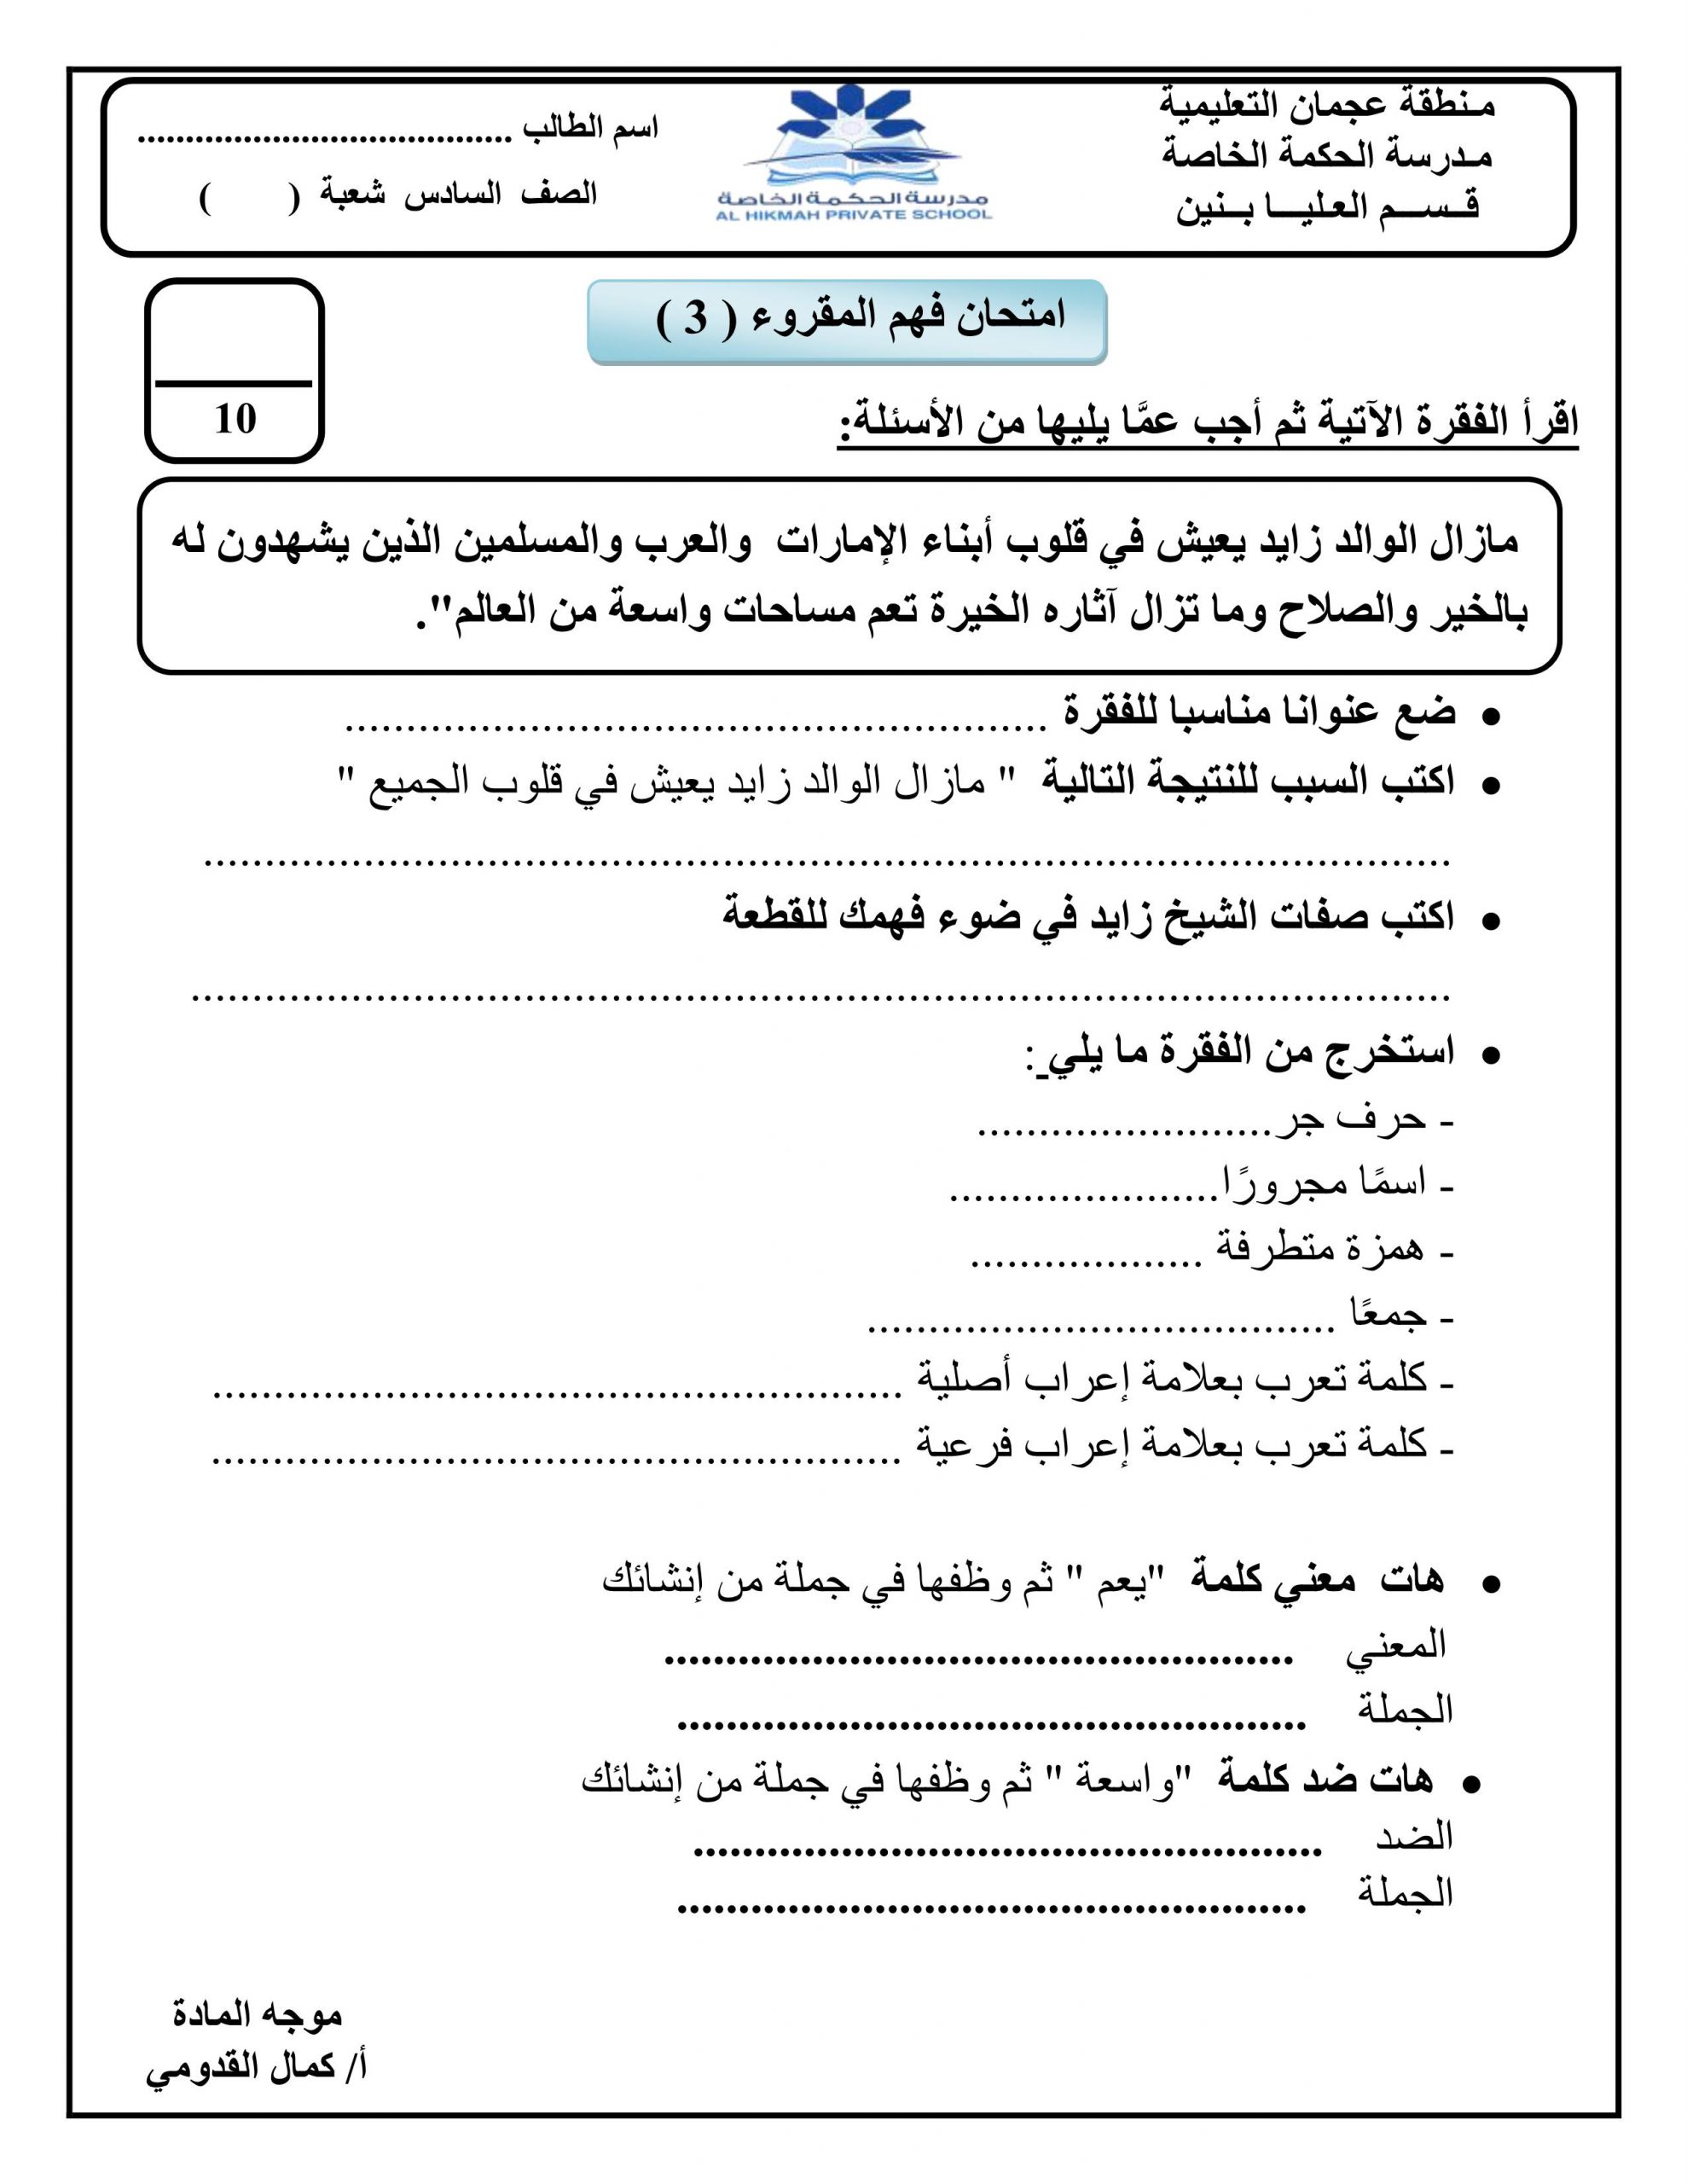 ورقة عمل امتحان فهم المقروء للصف السادس مادة اللغة العربية